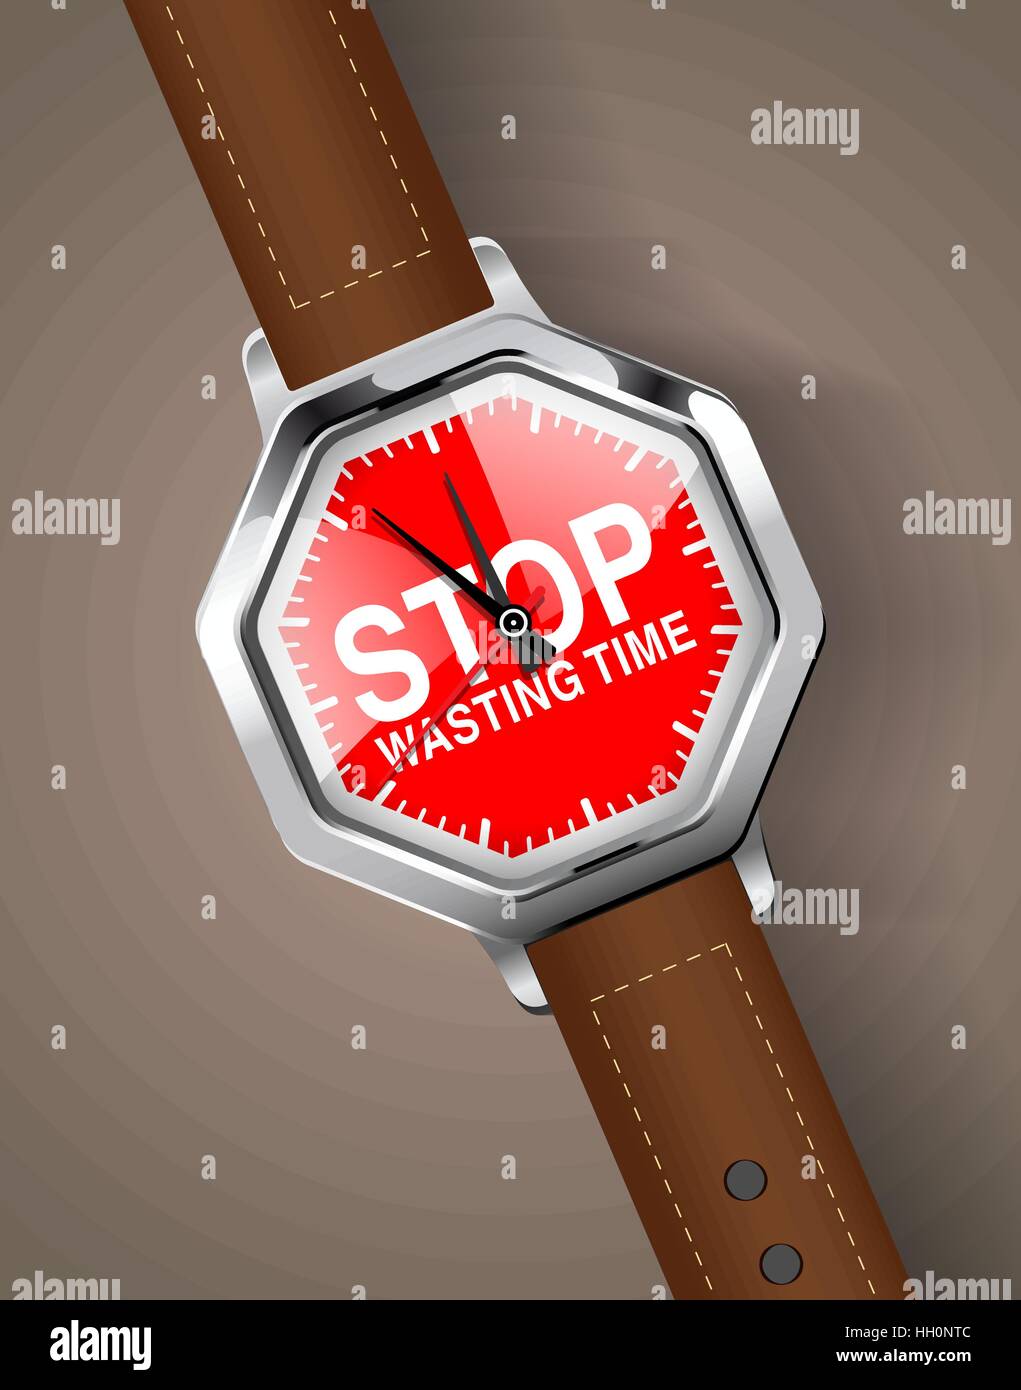 Chronomètre - arrêter de perdre du temps Illustration de Vecteur